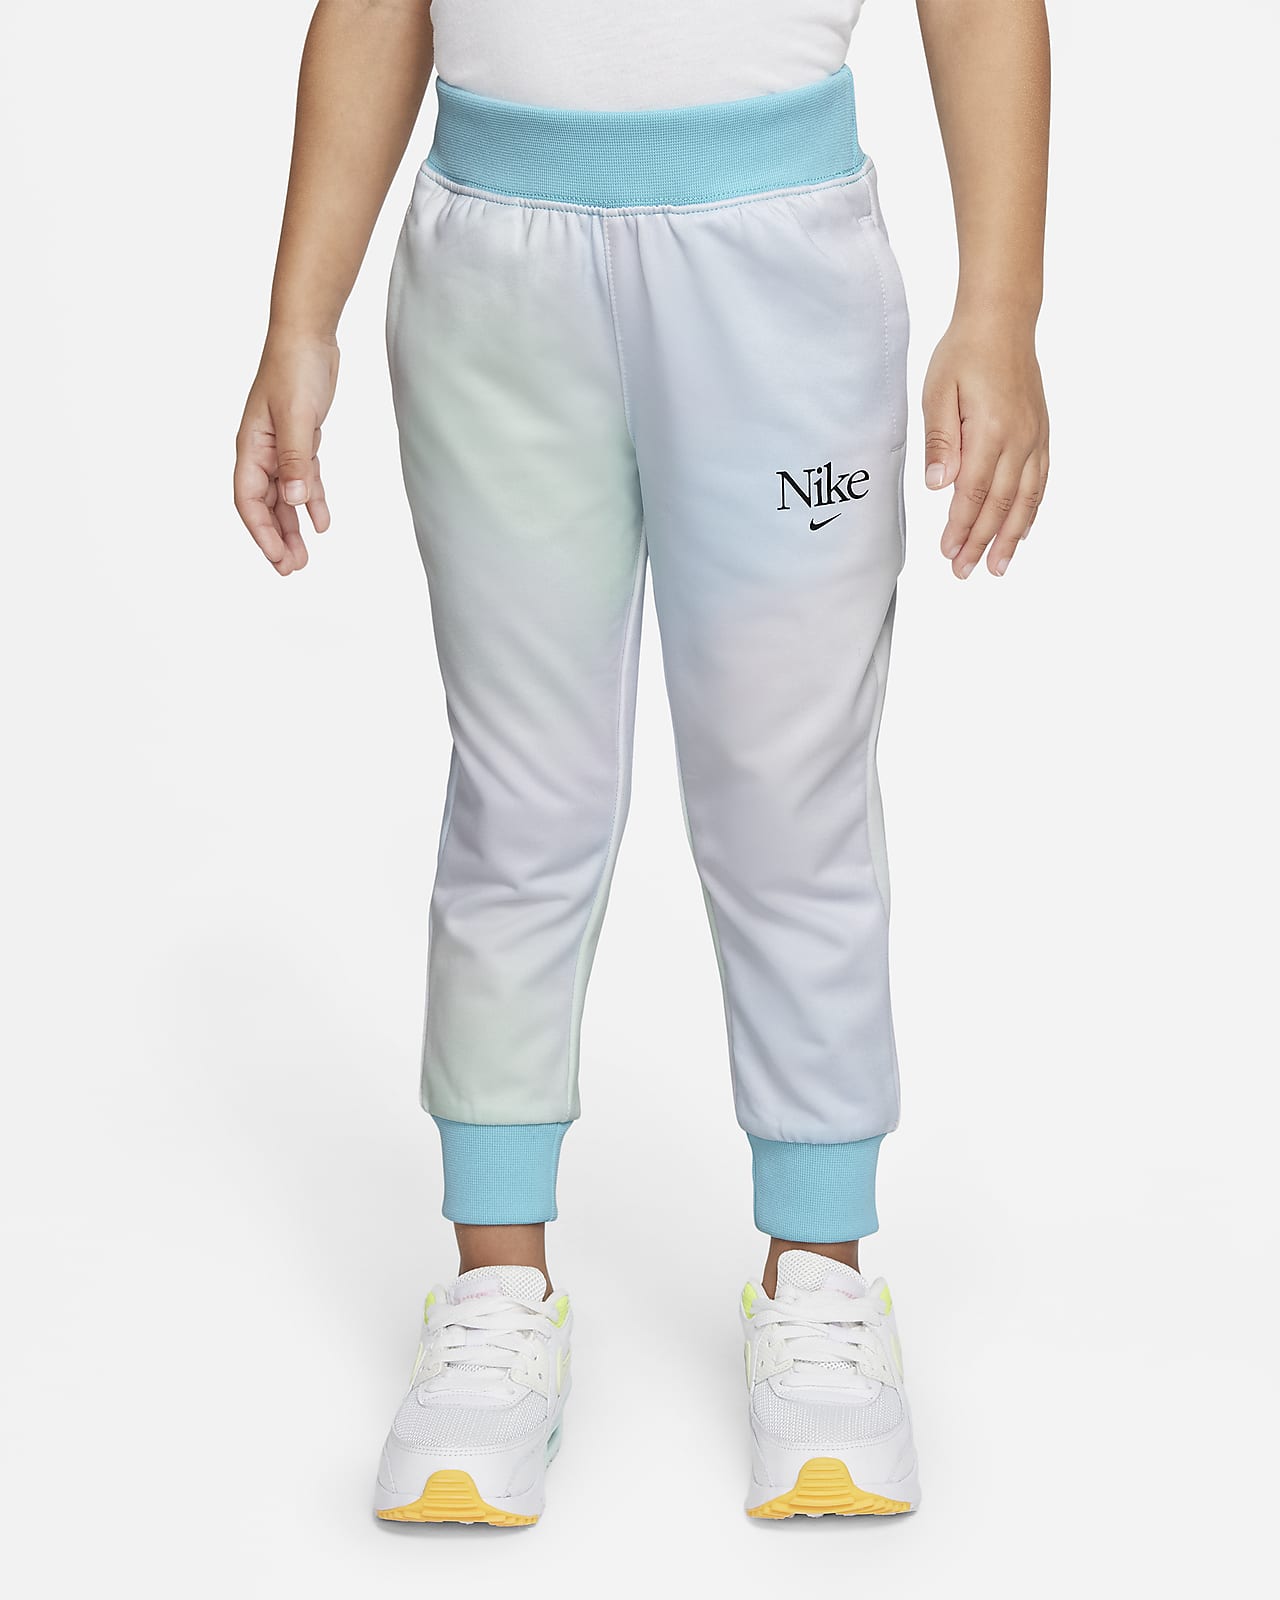 Comparación Vacunar proyector Pantalones para niños pequeños Nike. Nike.com